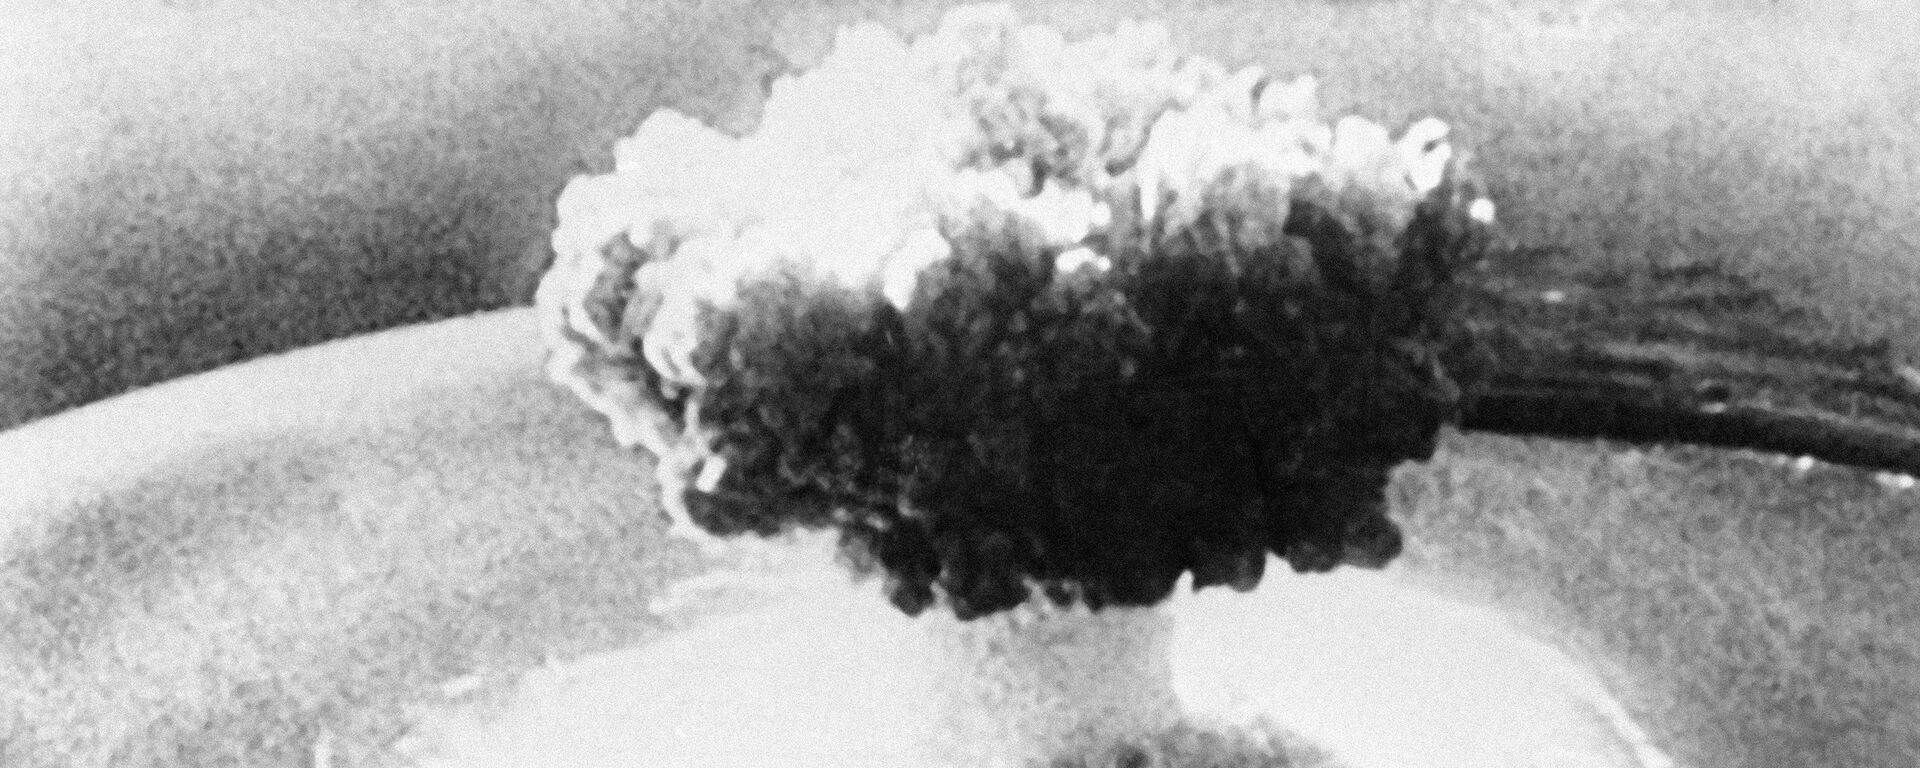 انفجار نووي - سبوتنيك عربي, 1920, 04.08.2020